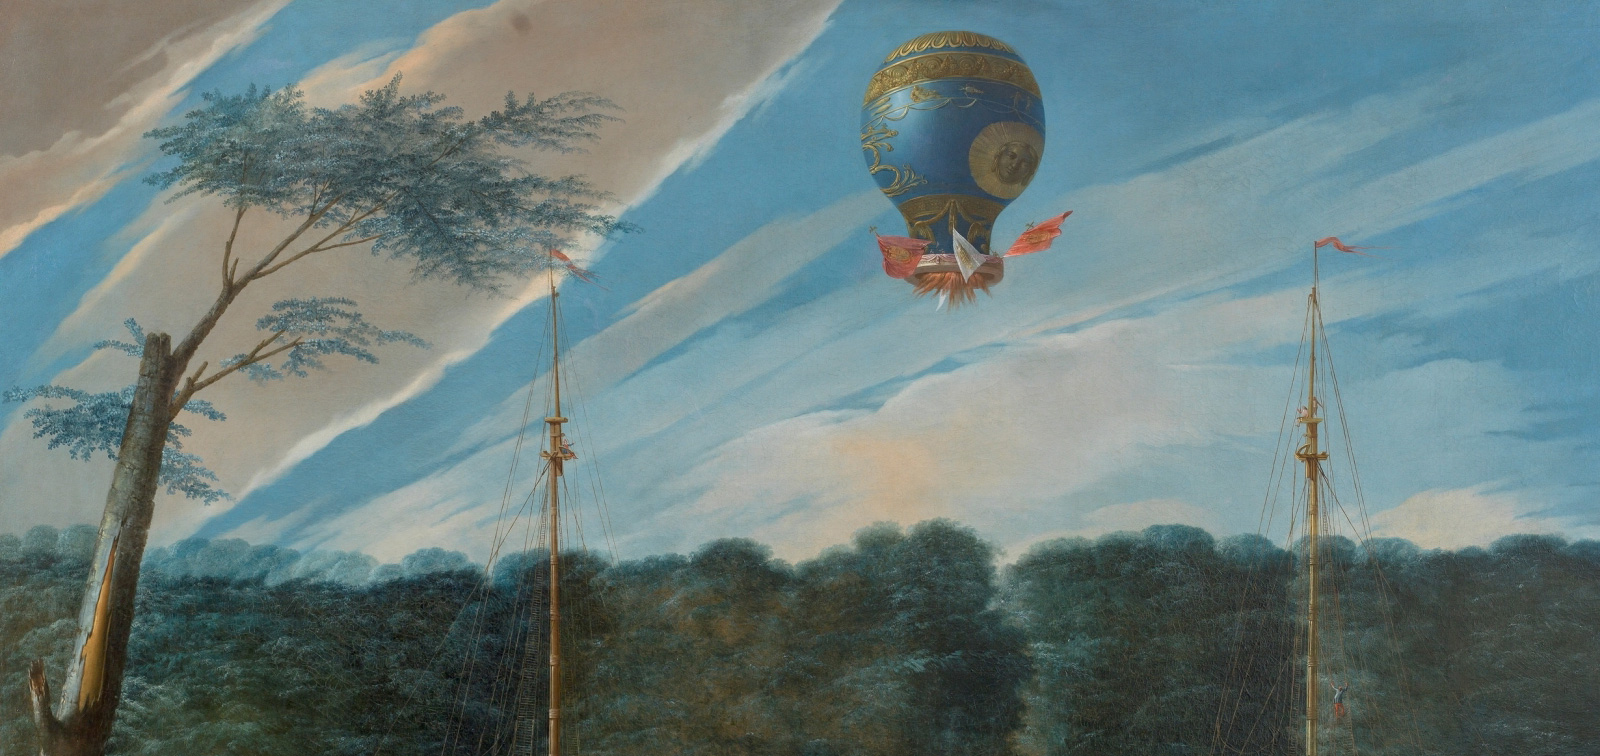 <em>Ascensión de un globo Montgolfier en Aranjuez</em>, de Antonio Carnicero